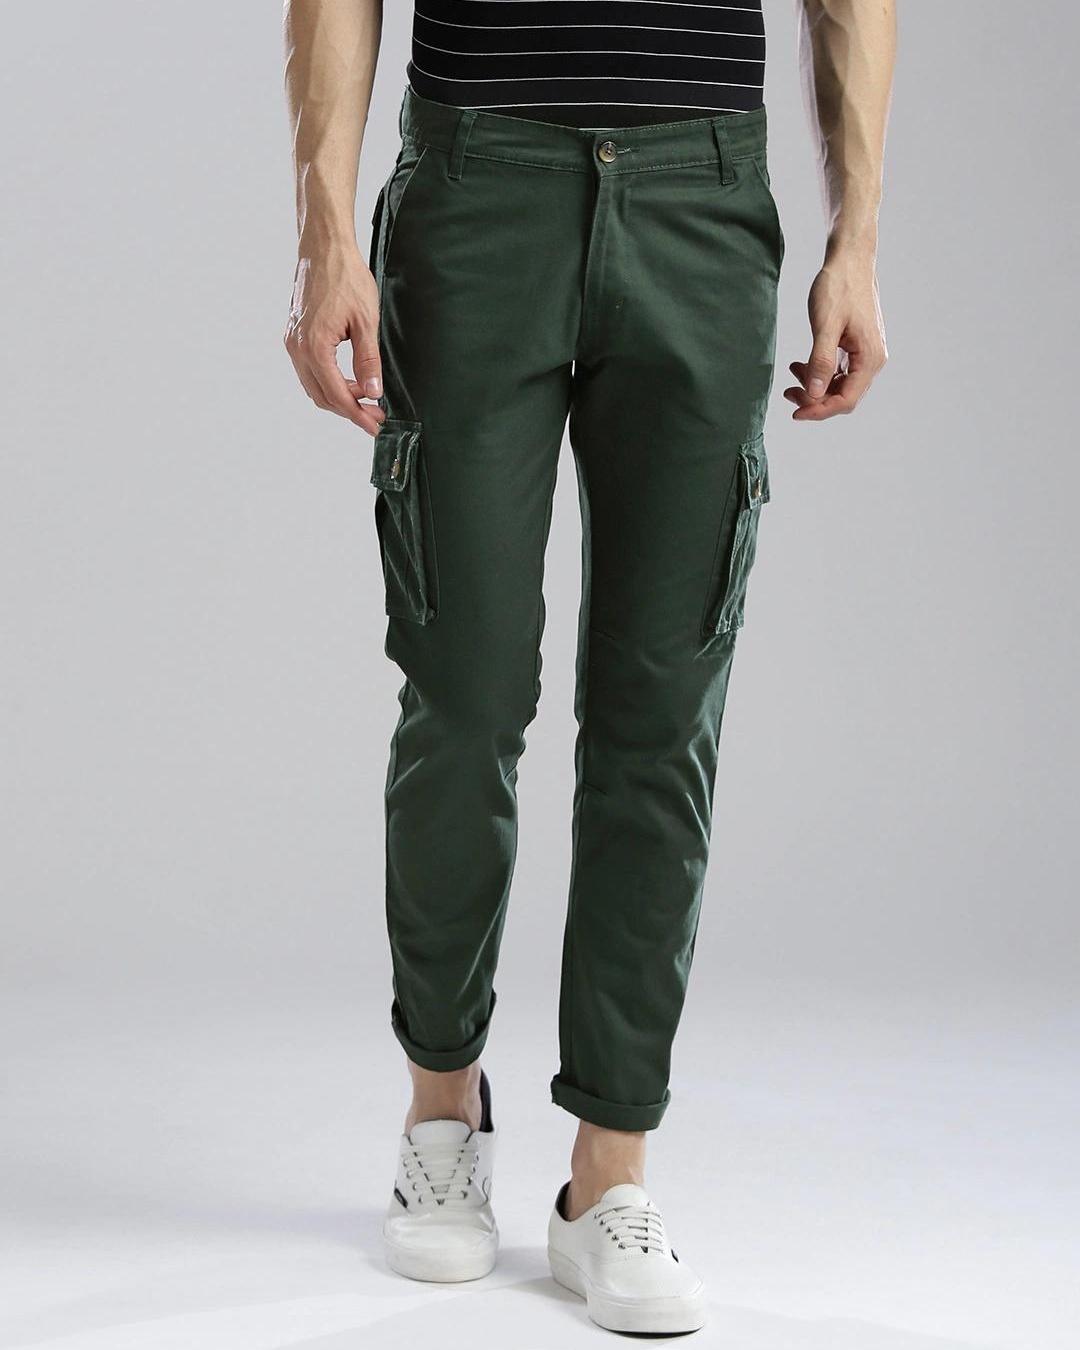 Buy Mens Green Slim Fit Cargo Trousers for Men Green Online at Bewakoof